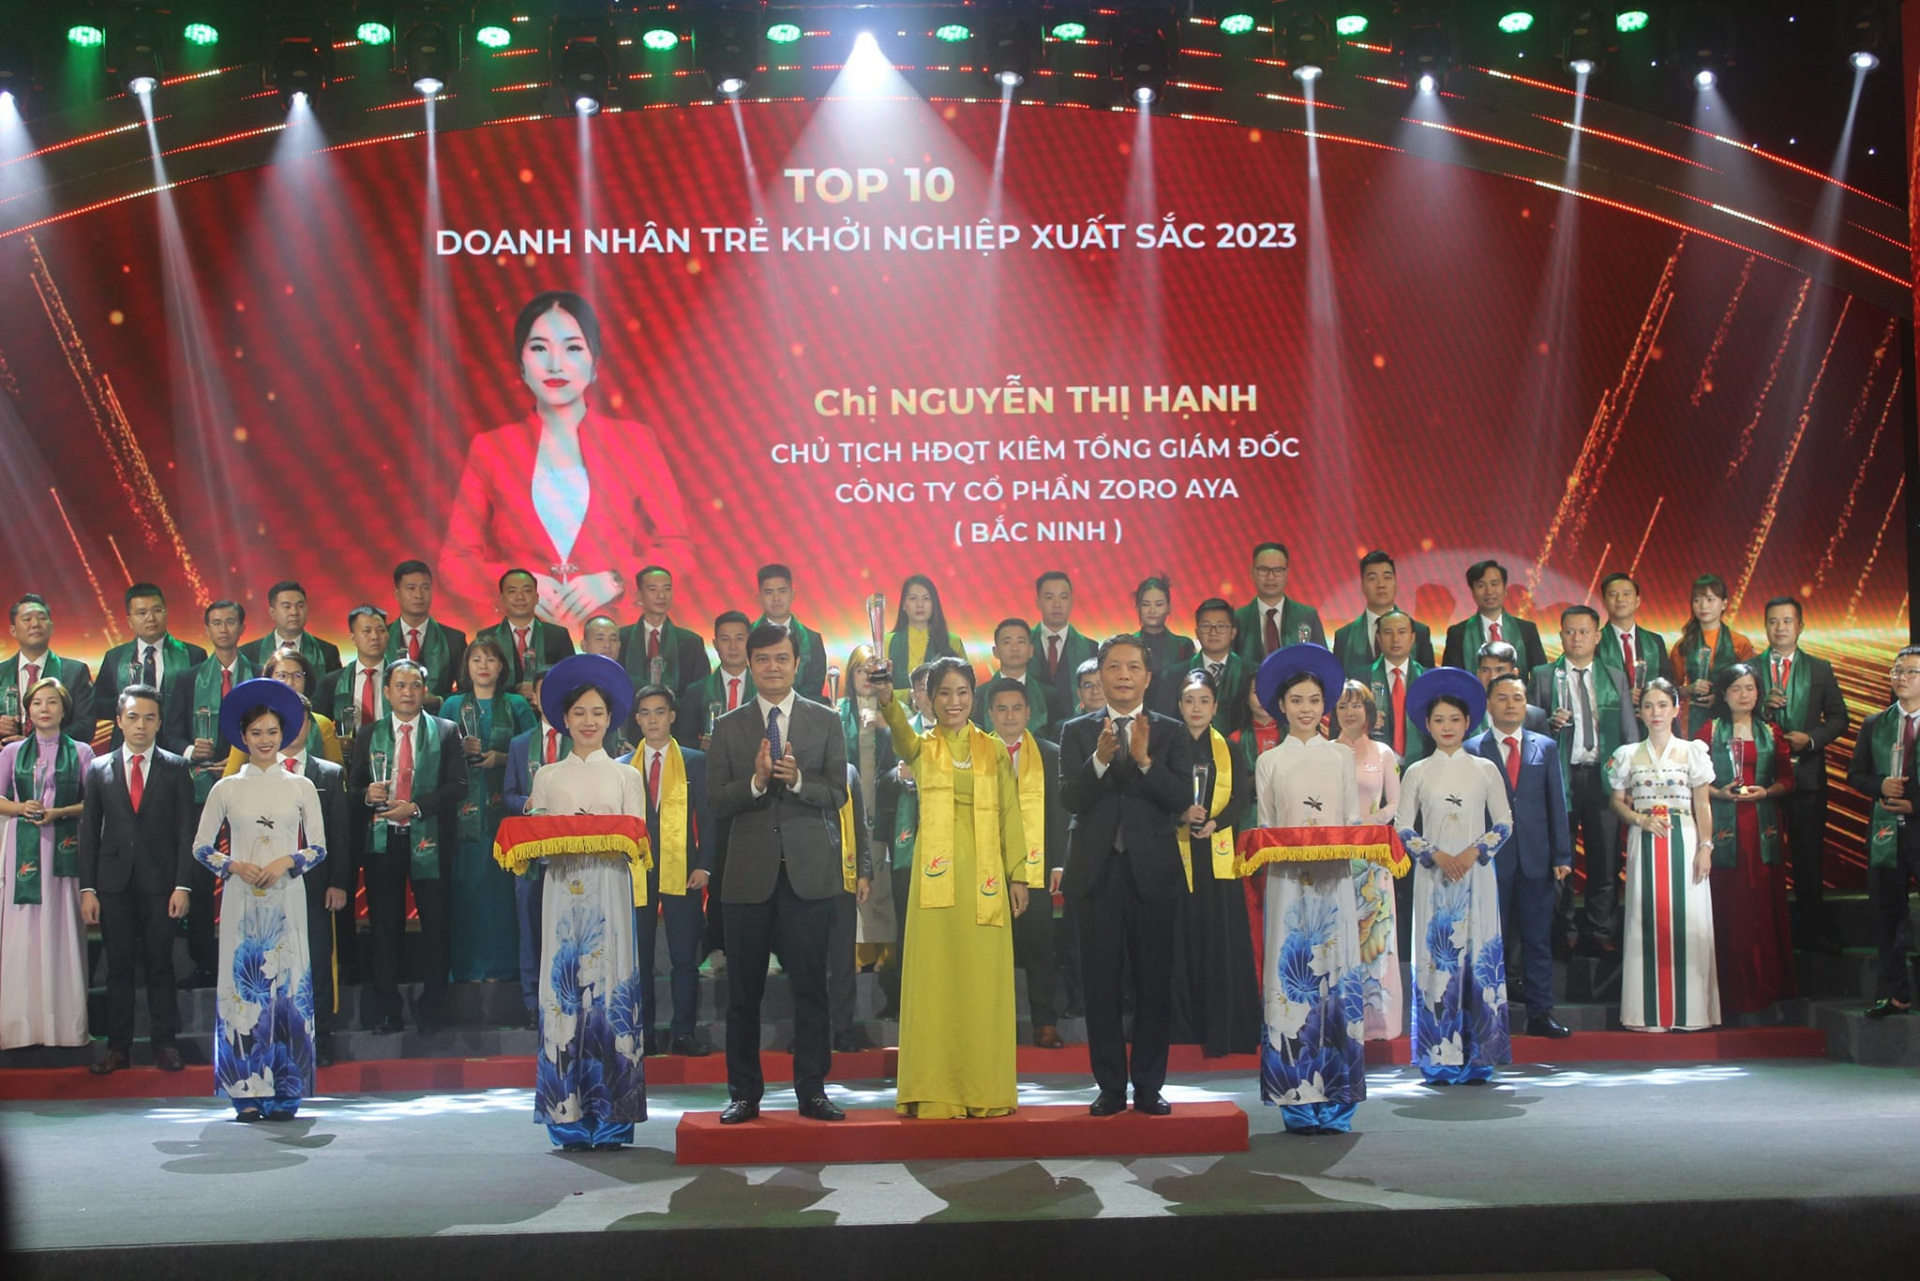 Chị Nguyễn Thị Hạnh - Tổng giám đốc Công ty cổ phần ZORO AYA đạt danh hiệu Top 10 Doanh nhân trẻ khởi nghiệp xuất sắc 2023